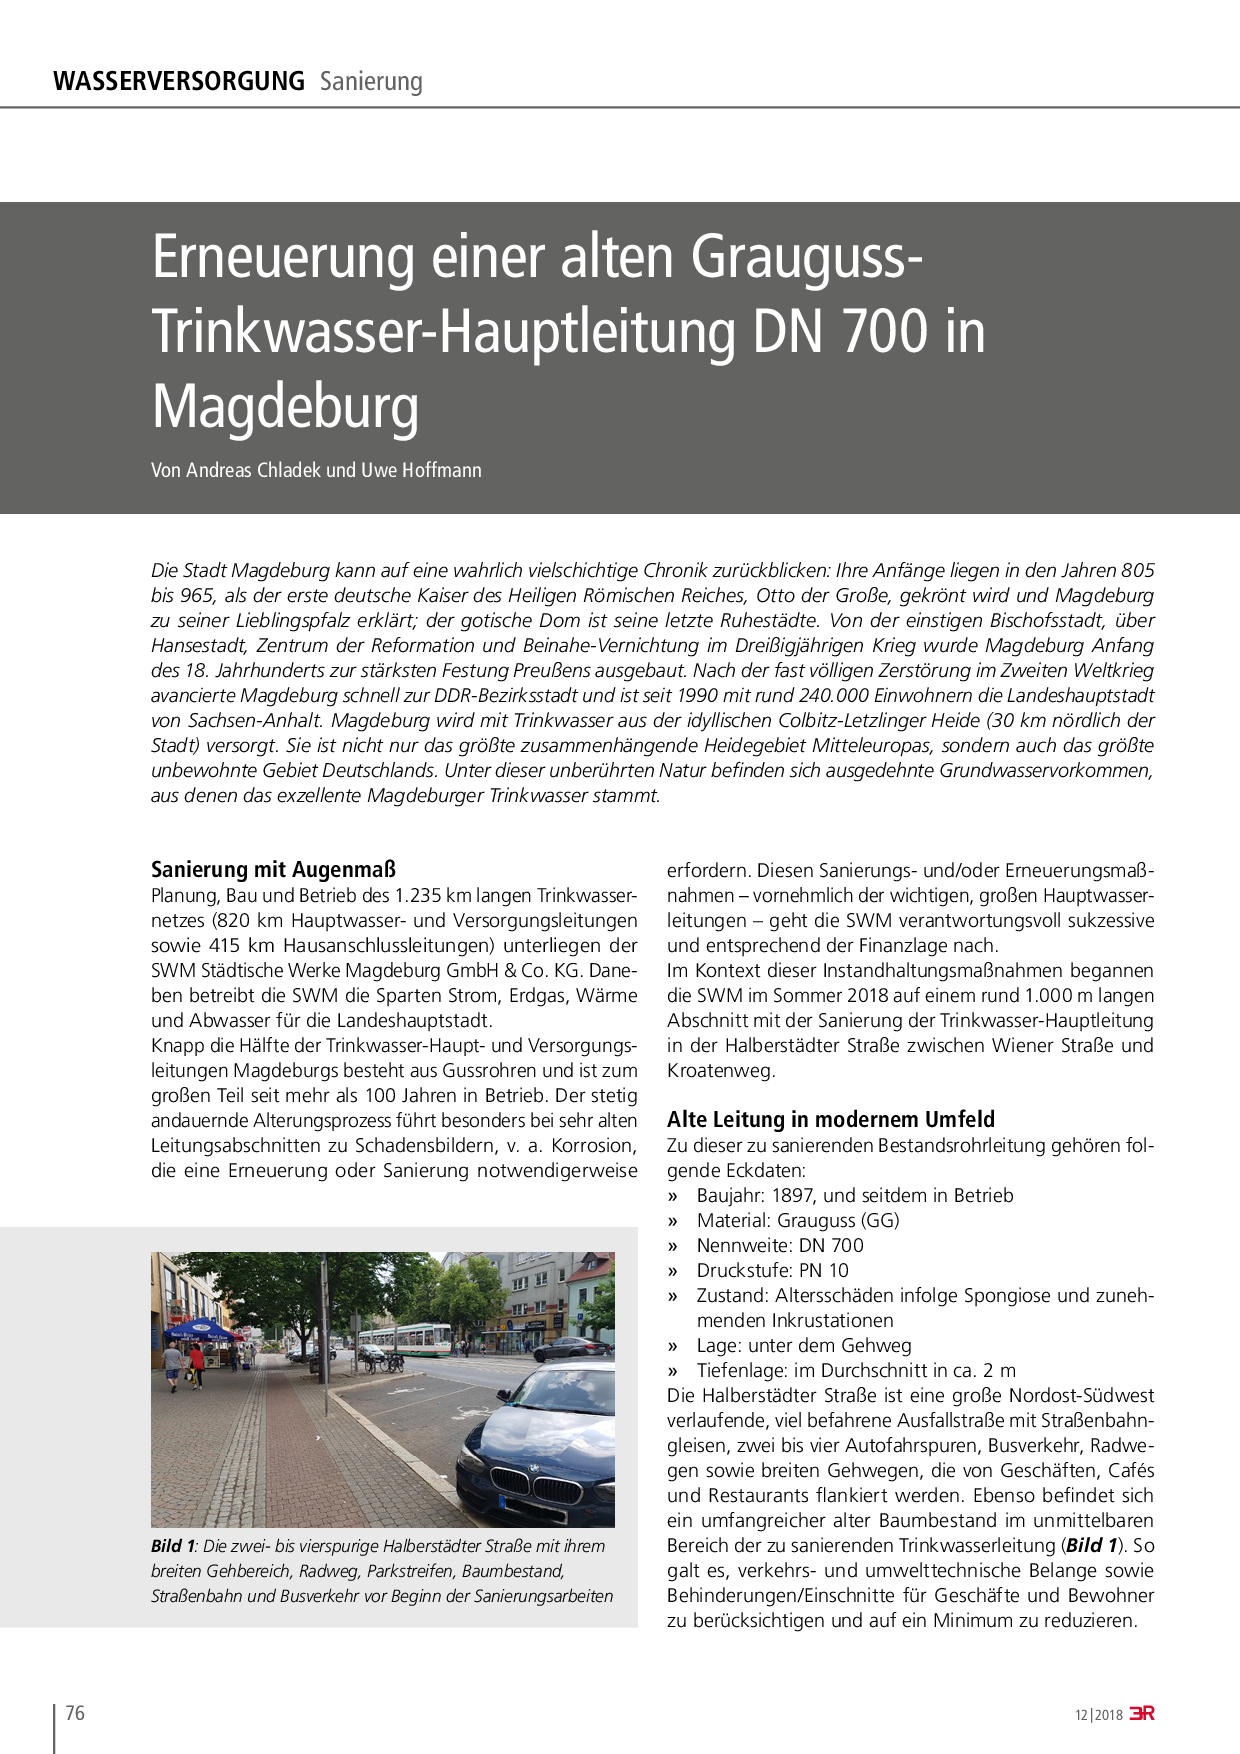 Erneuerung einer alten Grauguss-Trinkwasser-Hauptleitung DN 700 in Magdeburg